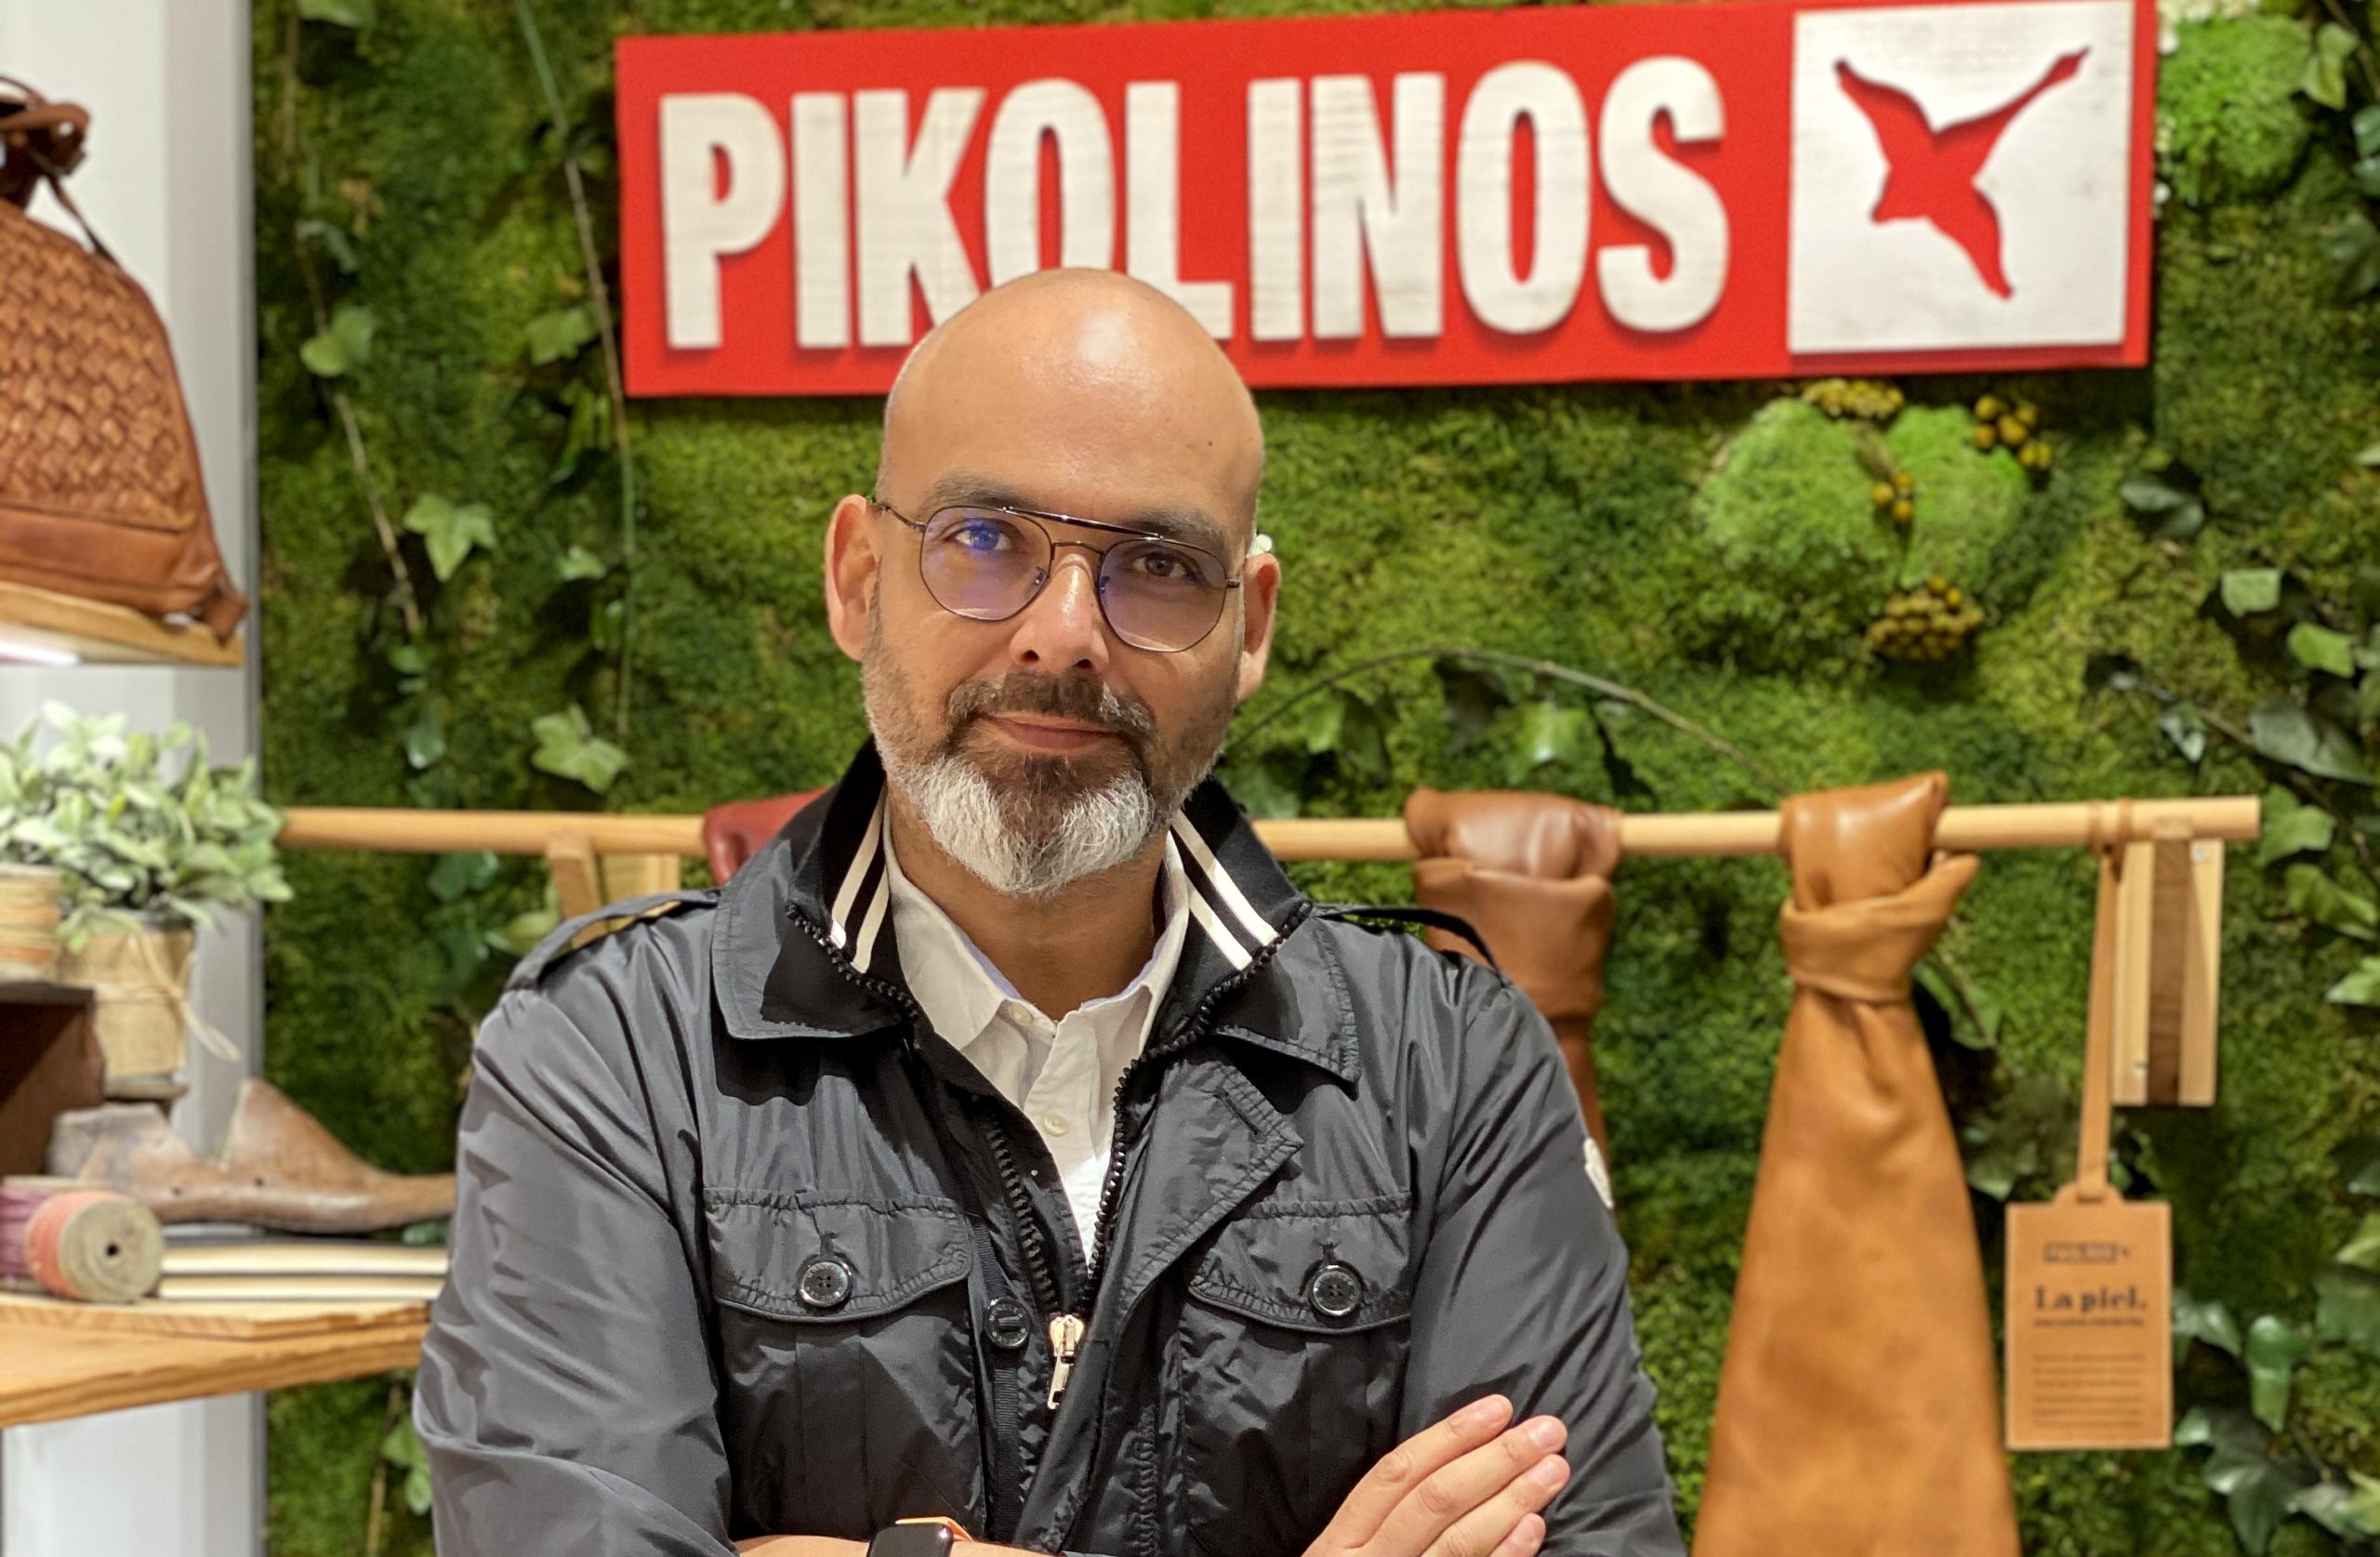 Videoentrevista a Marcos Vega Piñera, director Marketing y Customer Experience en Grupo Pikolinos - de Marcas Renombradas Españolas